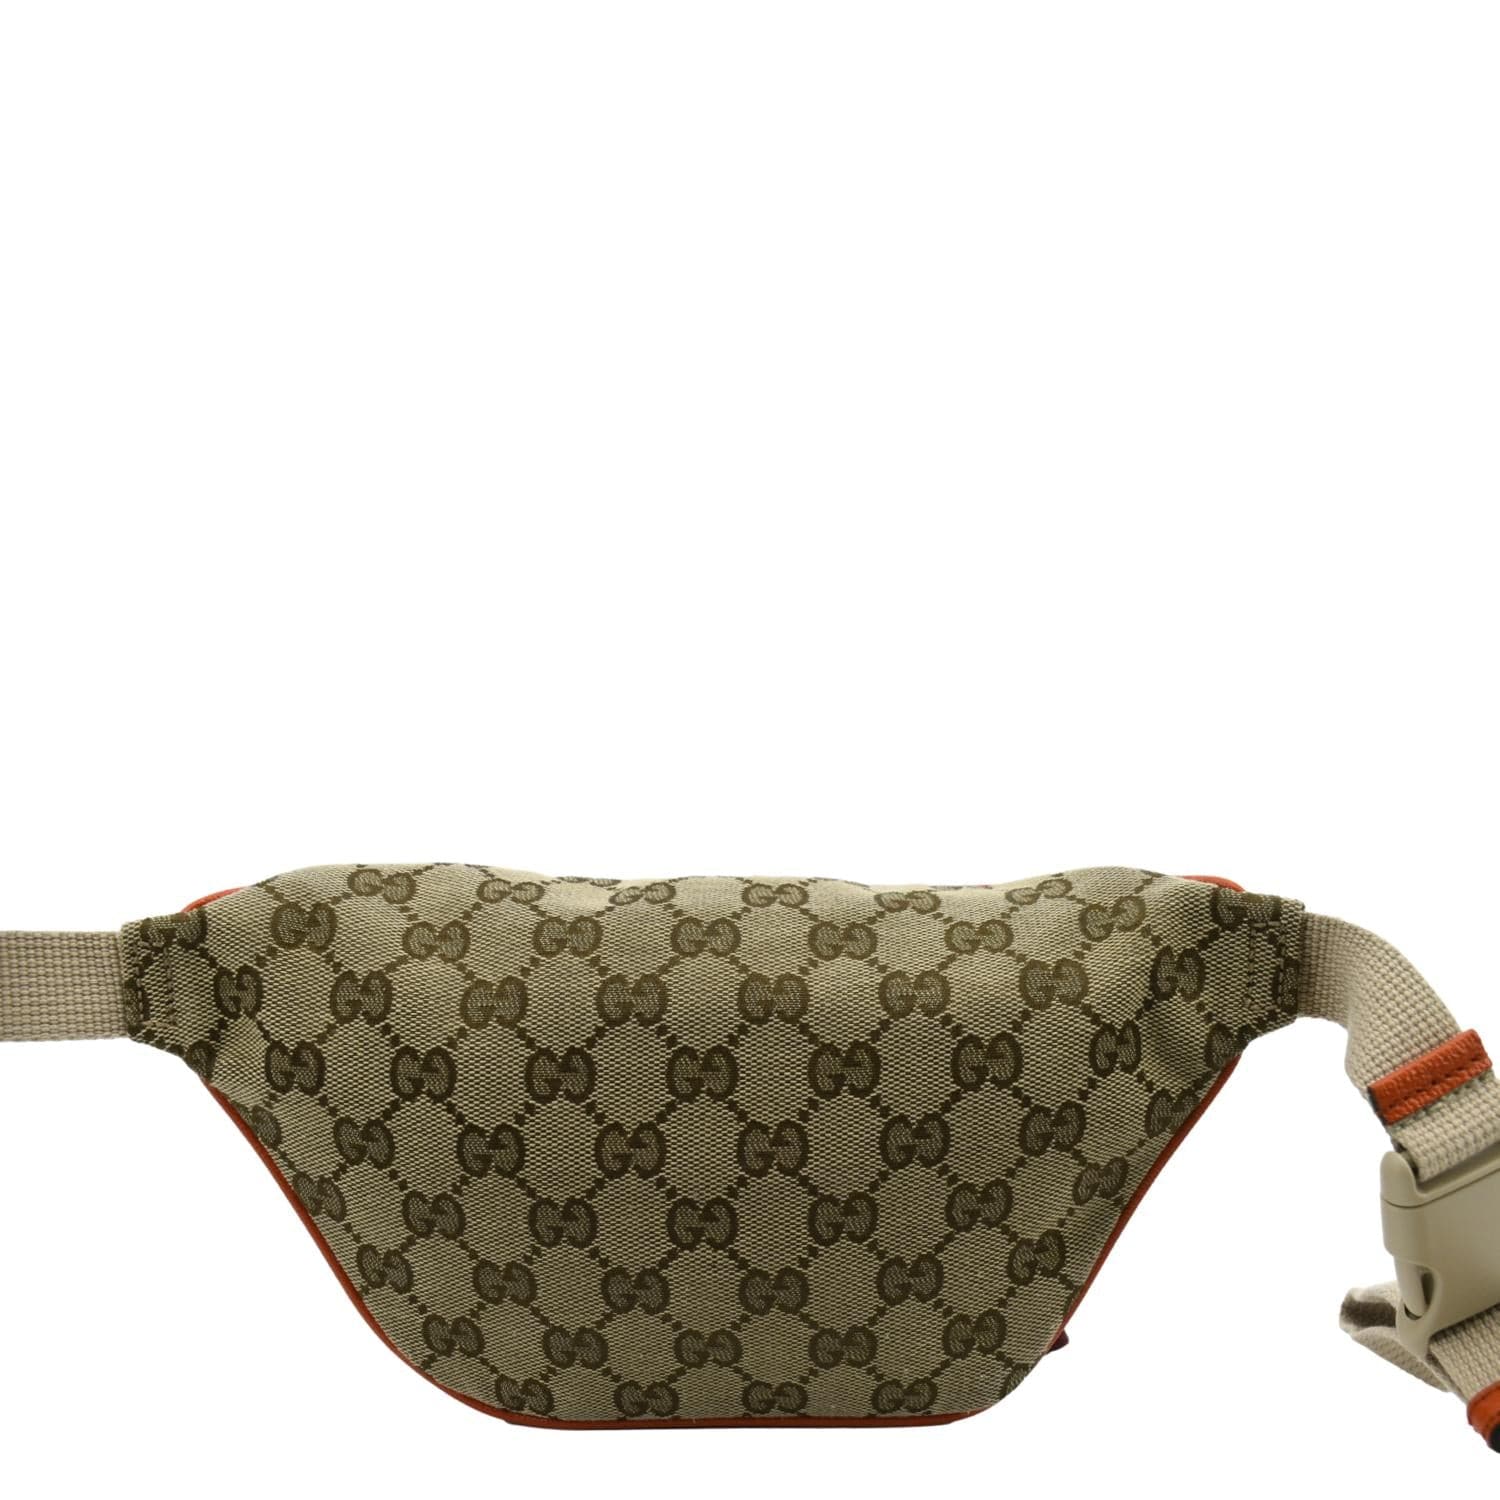 Louis+Vuitton+Bum+Bag+Belt+Bag+%26+Fanny+Pack+Orange+Canvas+